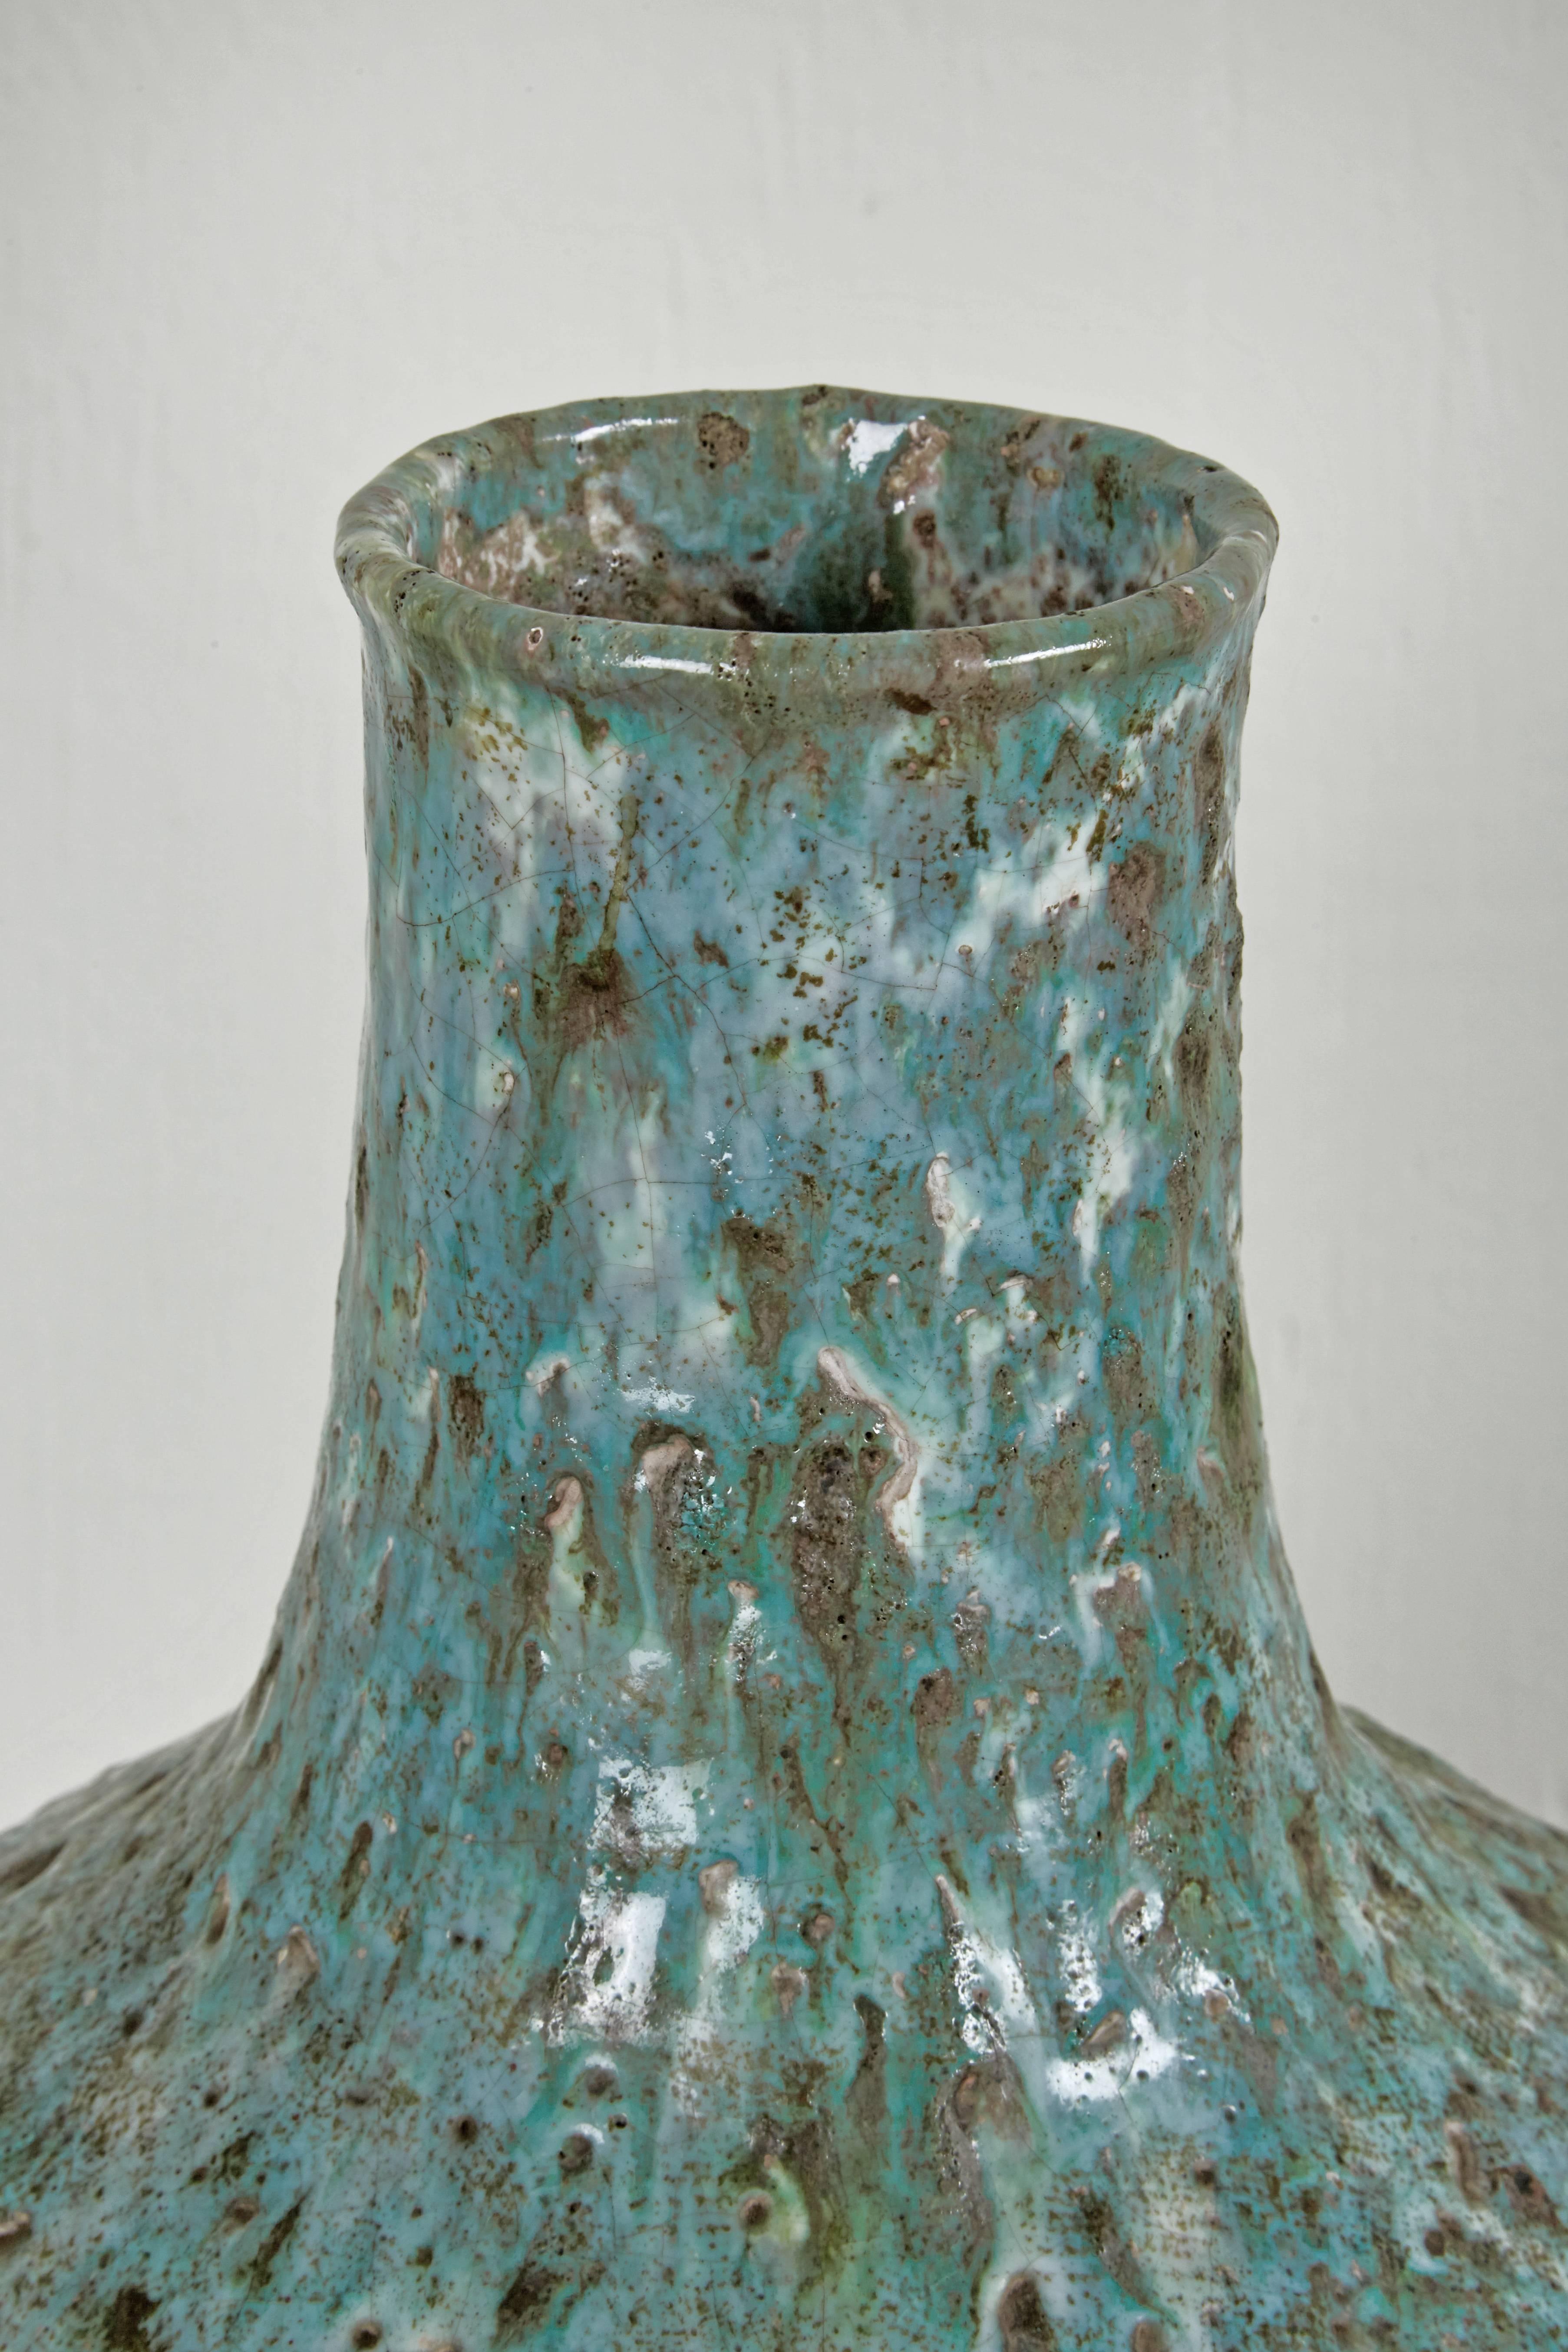 vessel ceramics